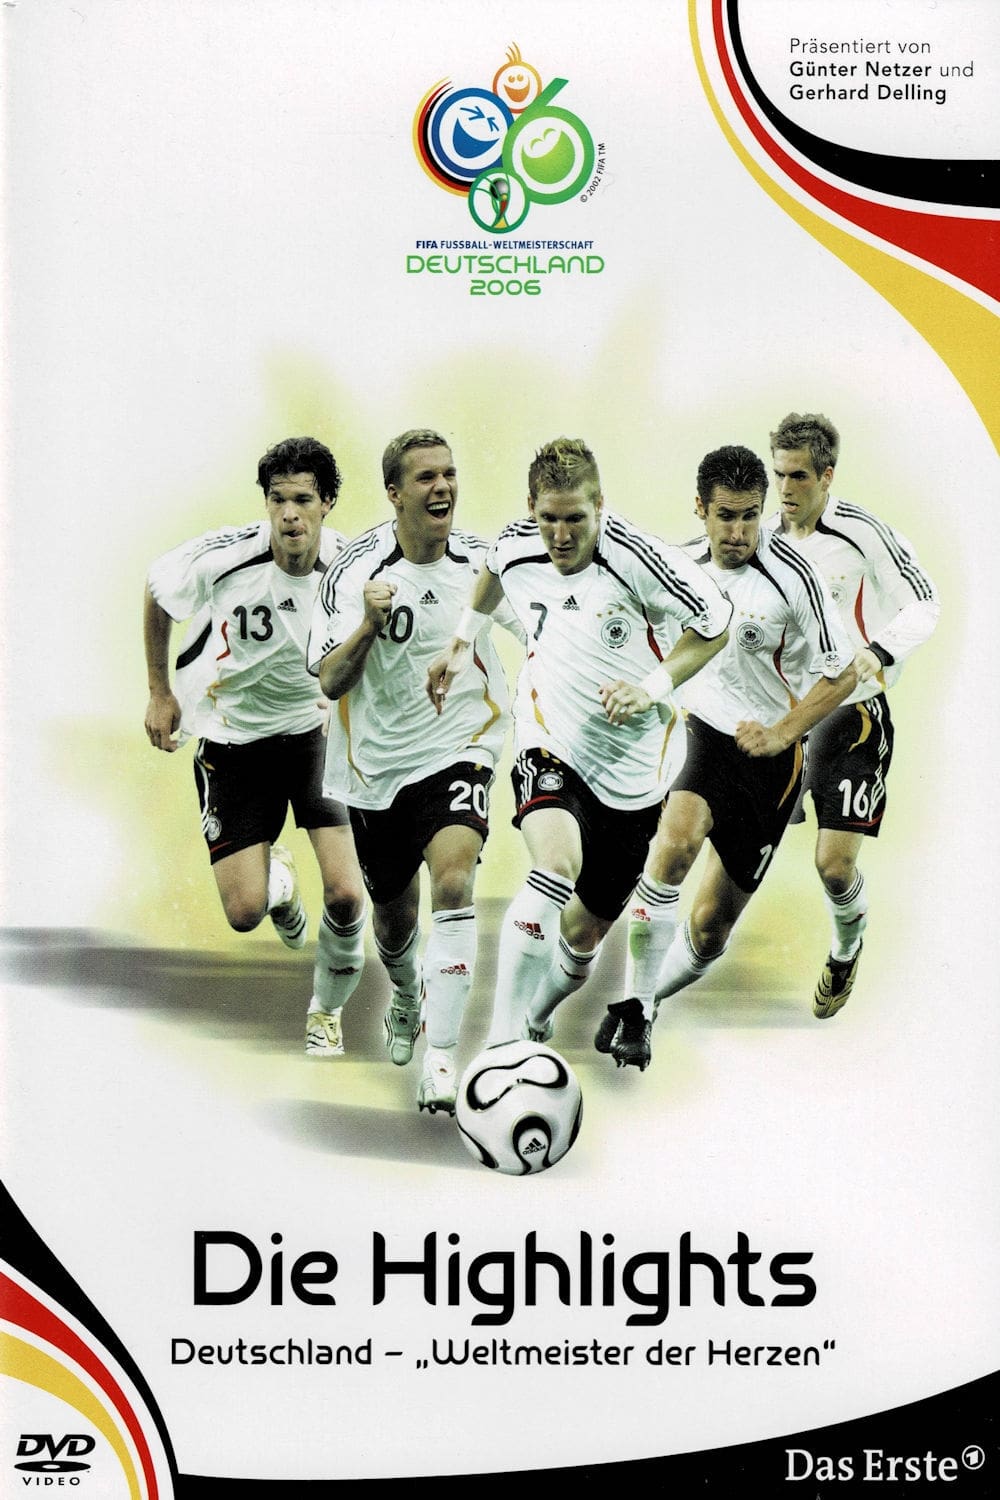 WM 2006 - Die Highlights: Deutschland, Weltmeister der Herzen (2006)